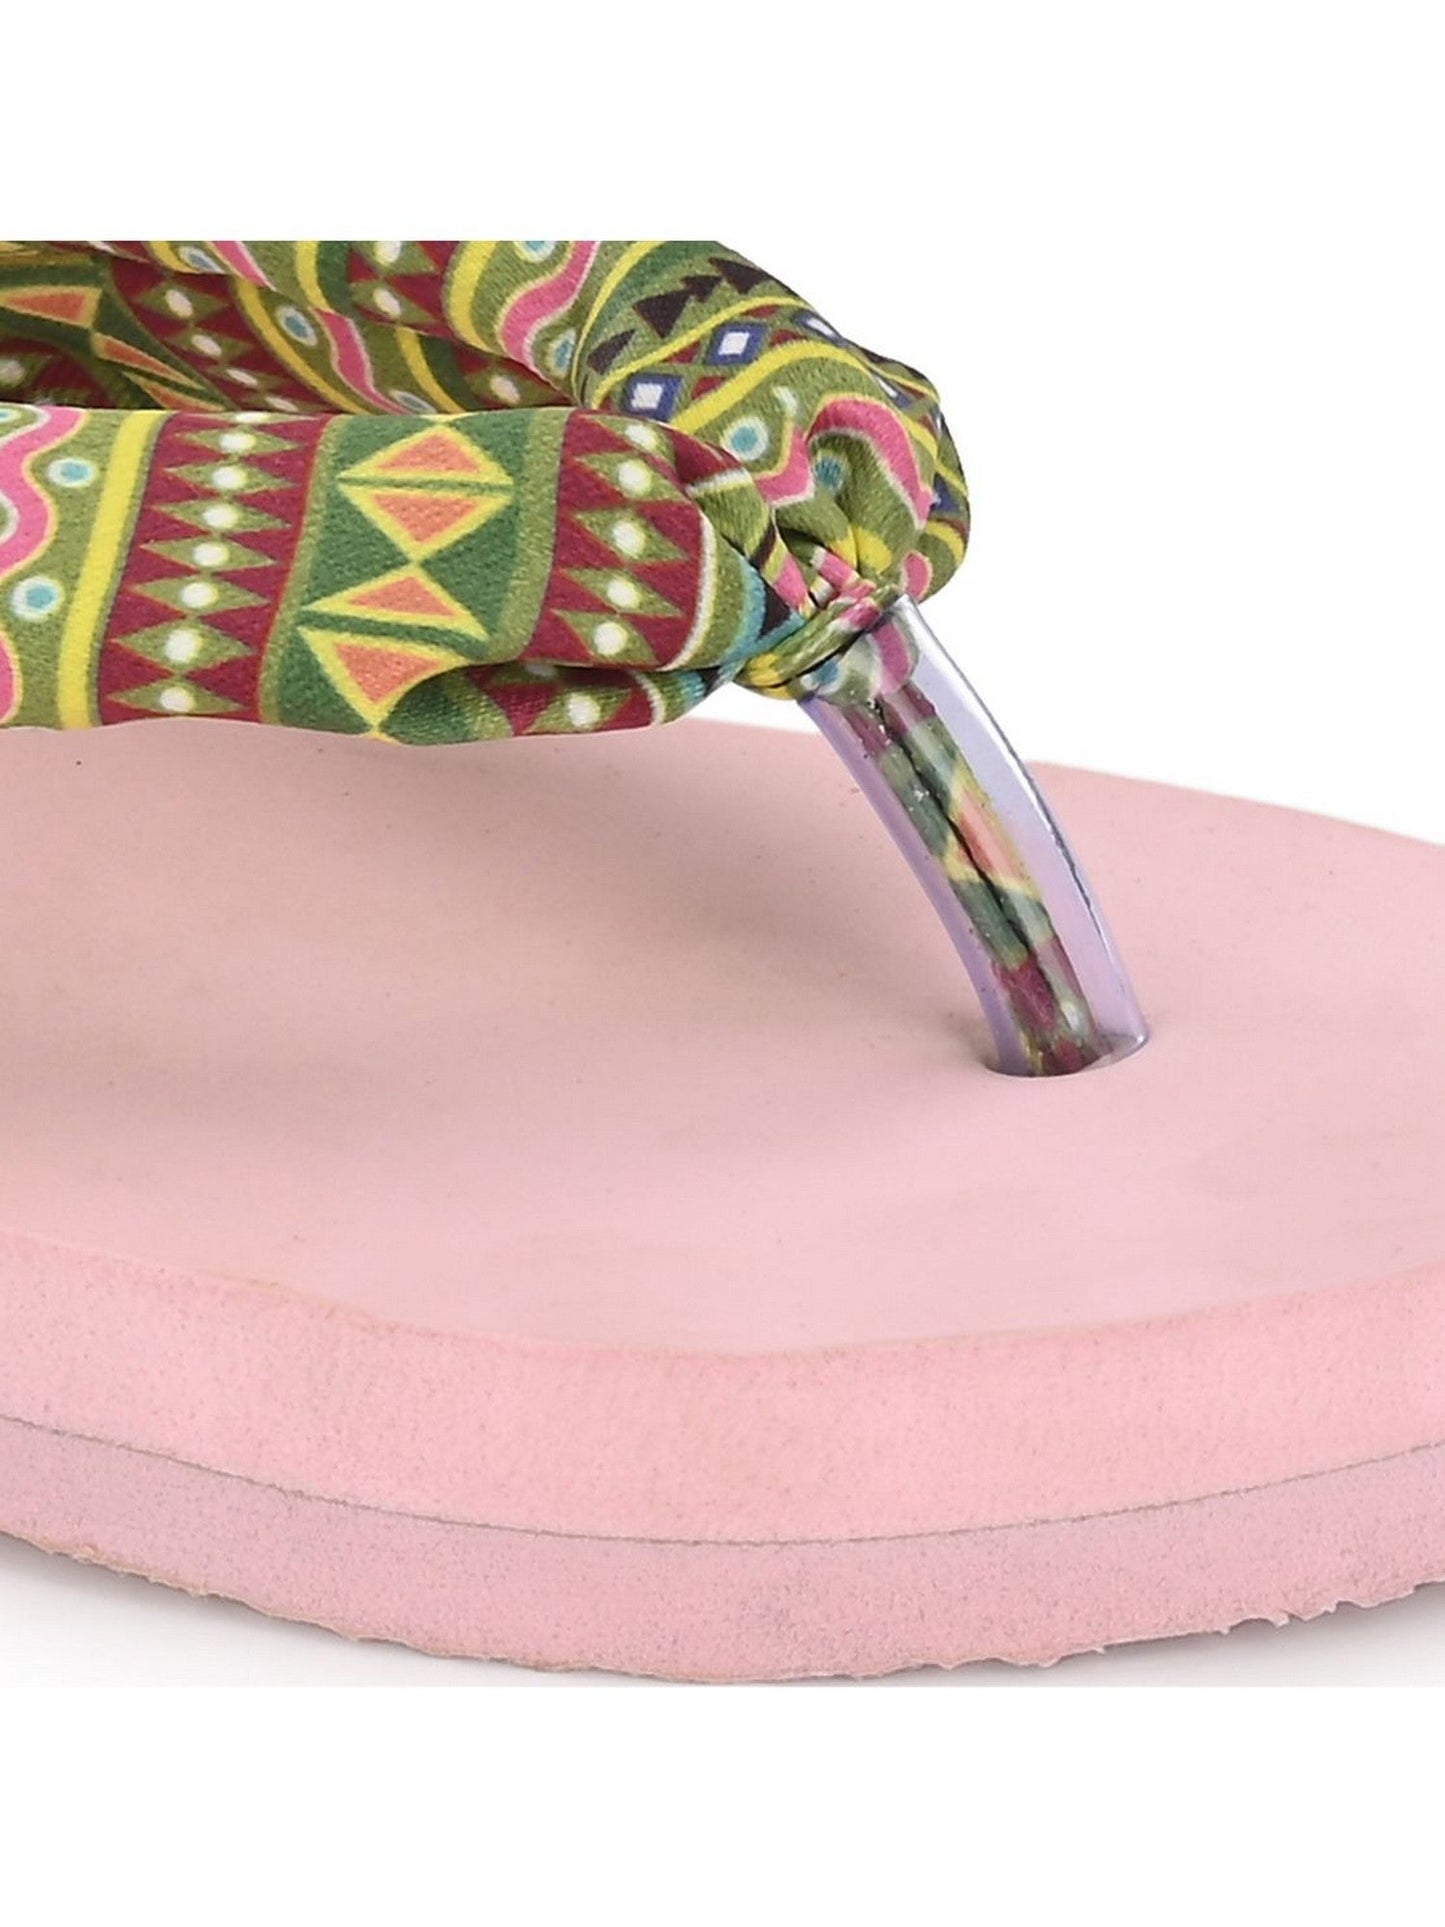 Hirolas® Women Multi-color Printed Thong Flip_Flops (HROWFF05PNK)